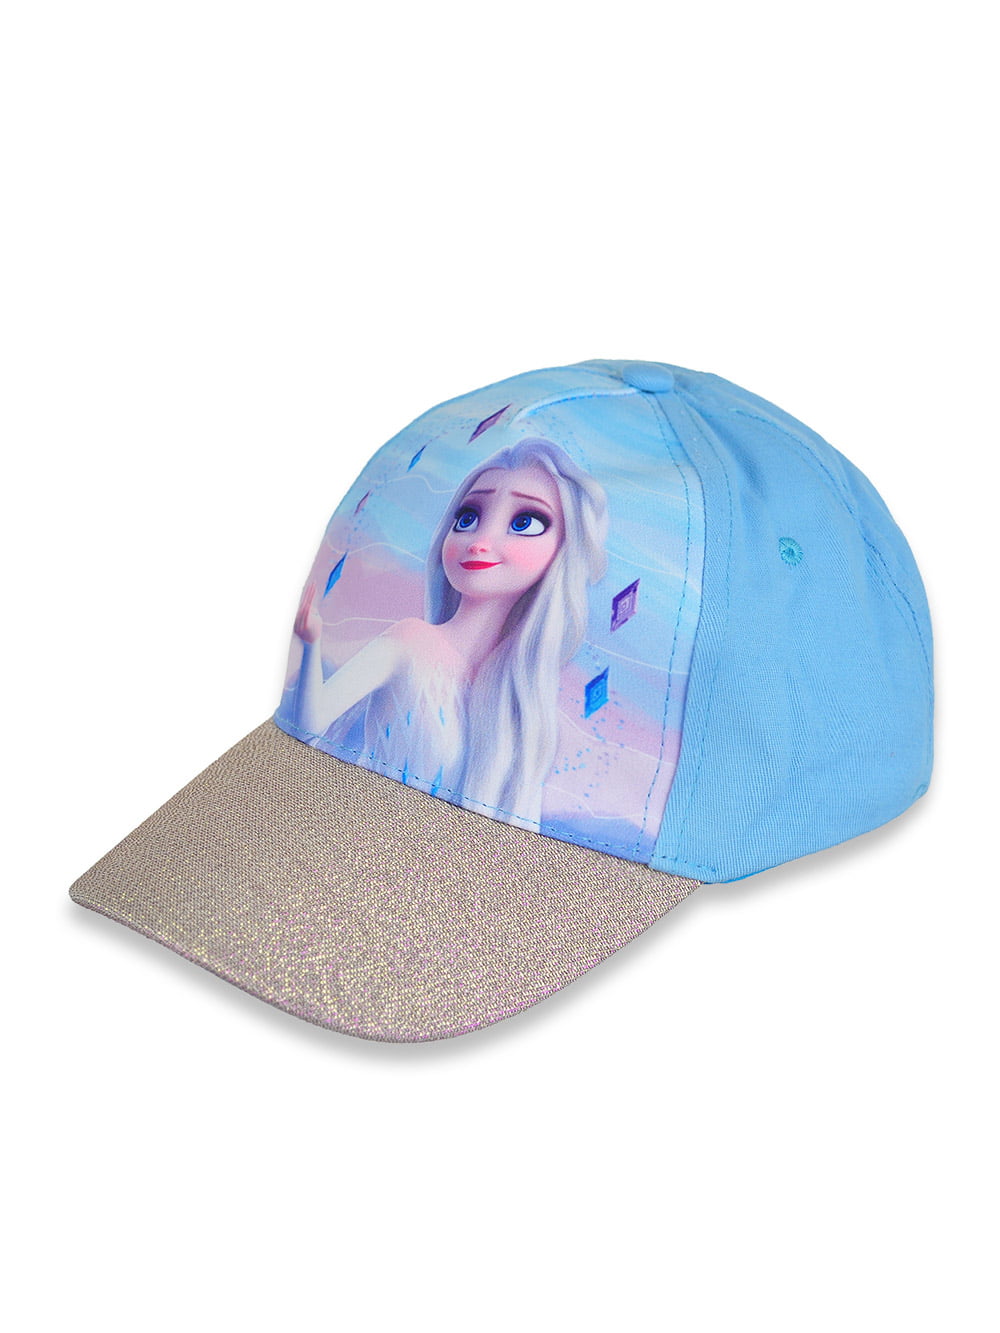 Official Disney Frozen Baseball Caps Summer Hats 52-54 cms/Frozen Socks 3 PAIRS 